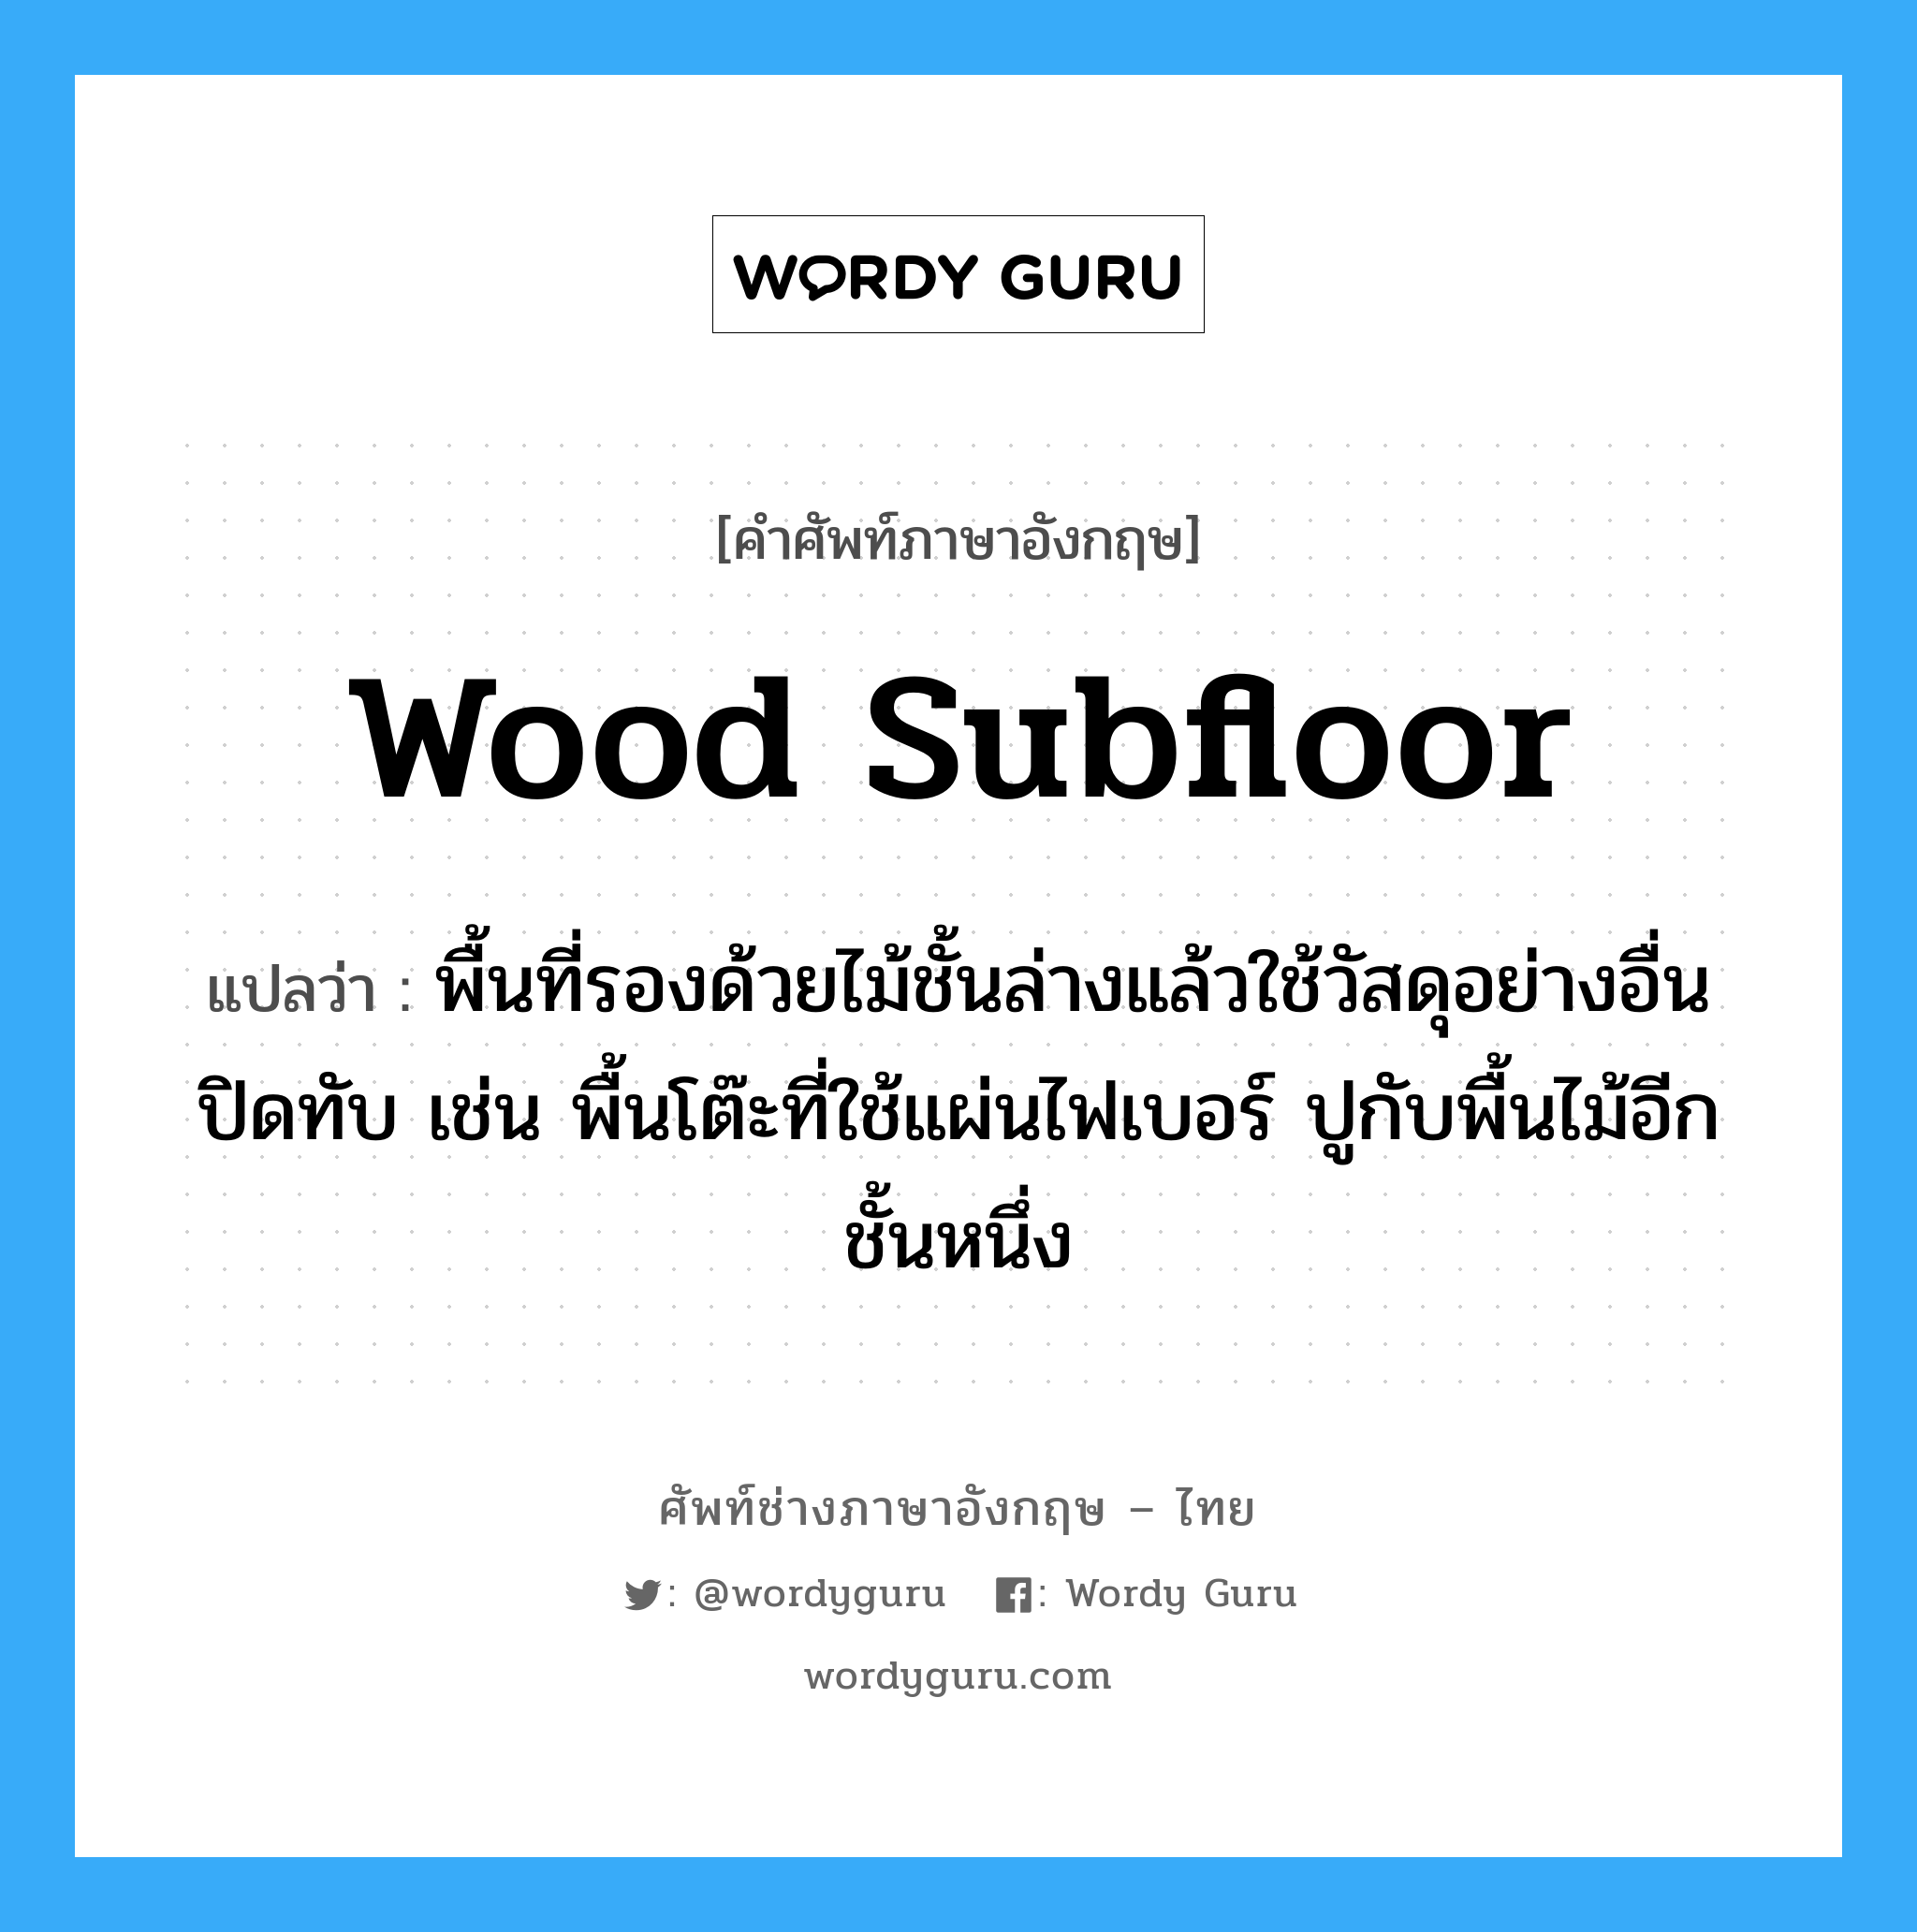 wood subfloor แปลว่า?, คำศัพท์ช่างภาษาอังกฤษ - ไทย wood subfloor คำศัพท์ภาษาอังกฤษ wood subfloor แปลว่า พื้นที่รองด้วยไม้ชั้นล่างแล้วใช้วัสดุอย่างอื่นปิดทับ เช่น พื้นโต๊ะที่ใช้แผ่นไฟเบอร์ ปูกับพื้นไม้อีกชั้นหนึ่ง